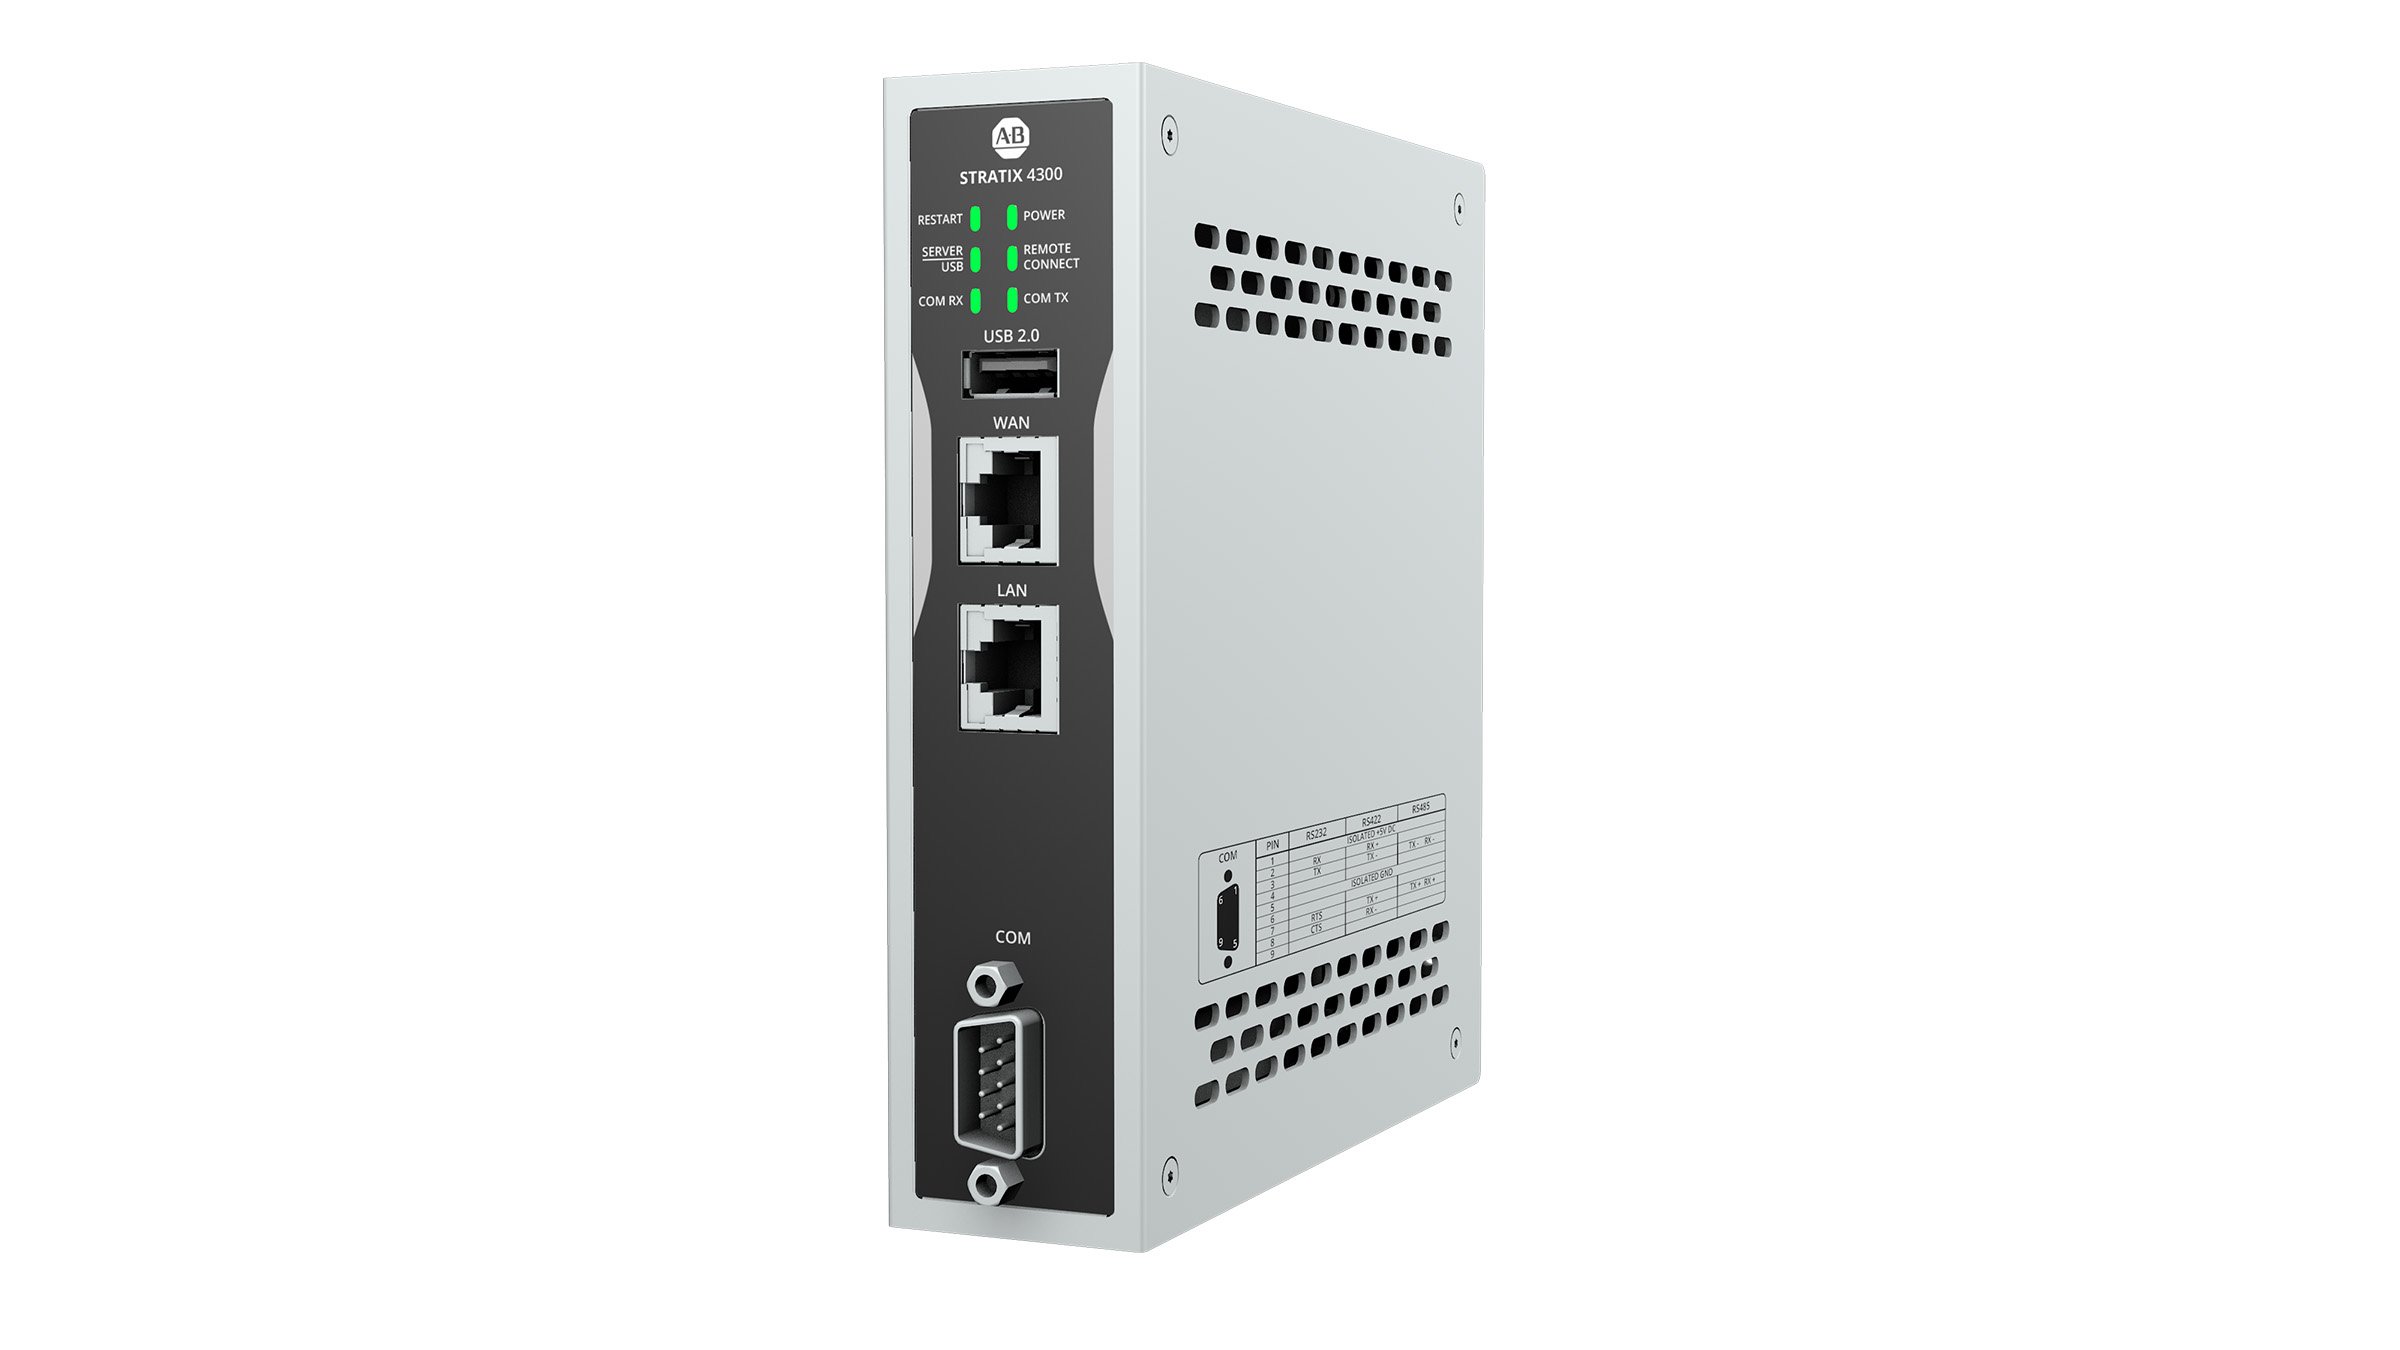 Router Stratix 4300 Remote Access RK20 con orientamento a sinistra